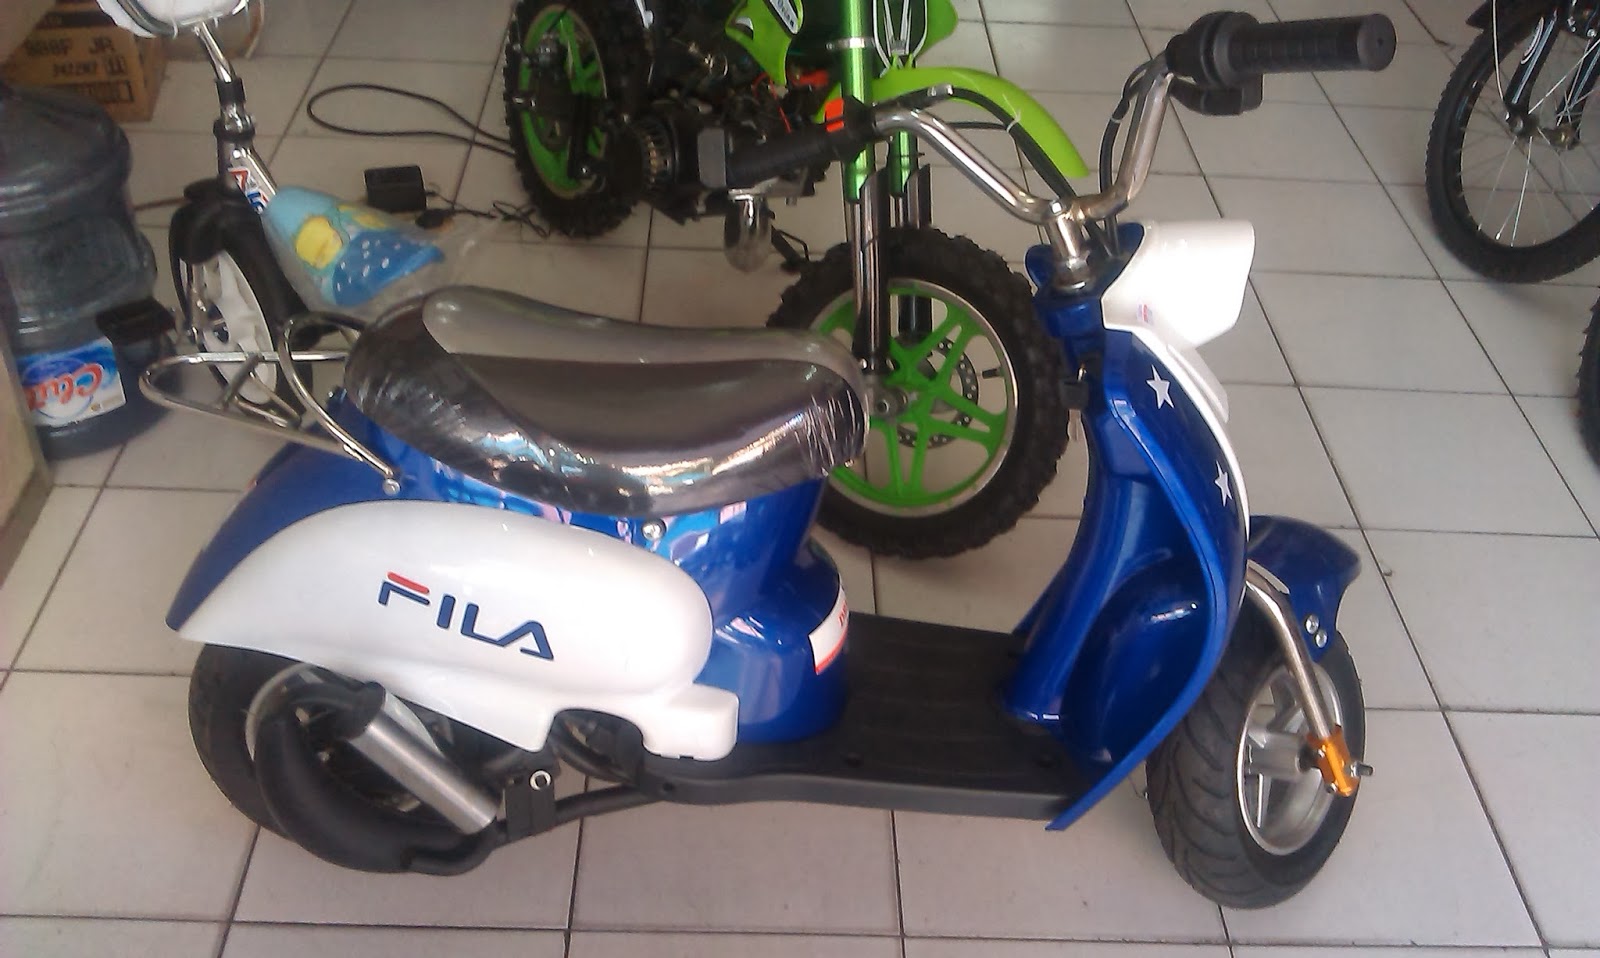 082131404044 MOTOR ATV TRAIL GP ELEKTRIK Surabaya Murah 2014